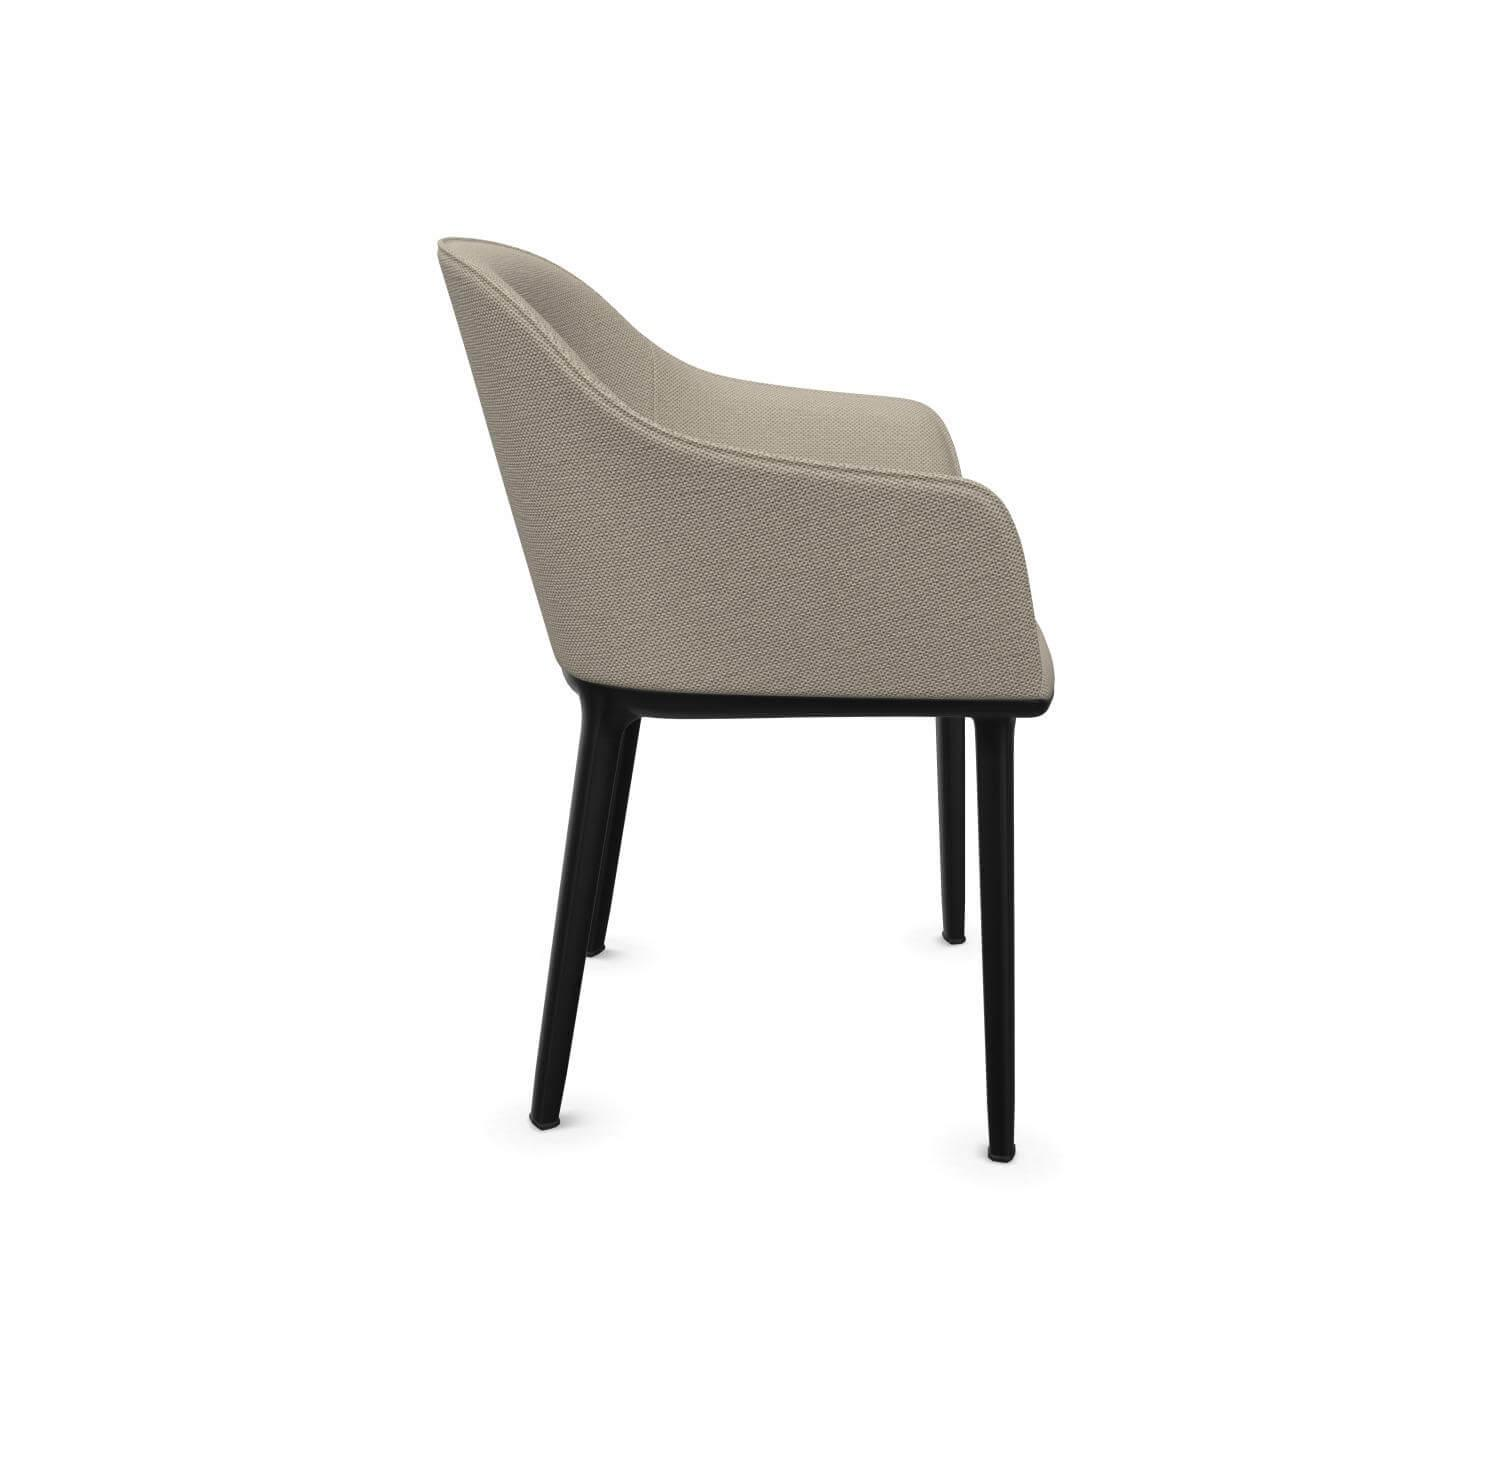 Stuhl Softshell Chair Bezug Warmgrey Elfenbein Beige Gestell Kunststoff Basic Dark 30 Schwarz